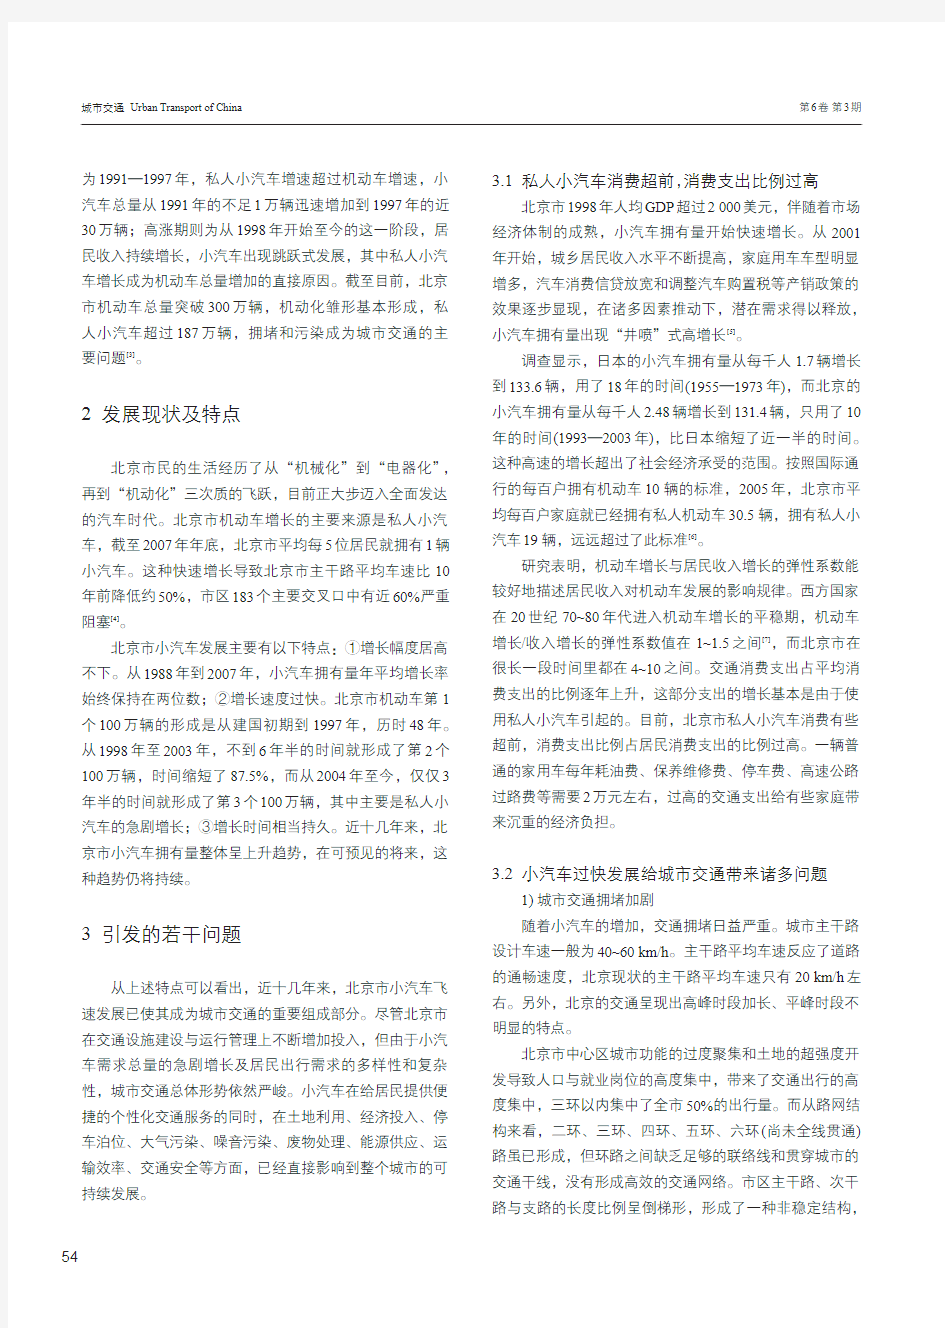 查看pdf全文北京市小汽车交通发展研究